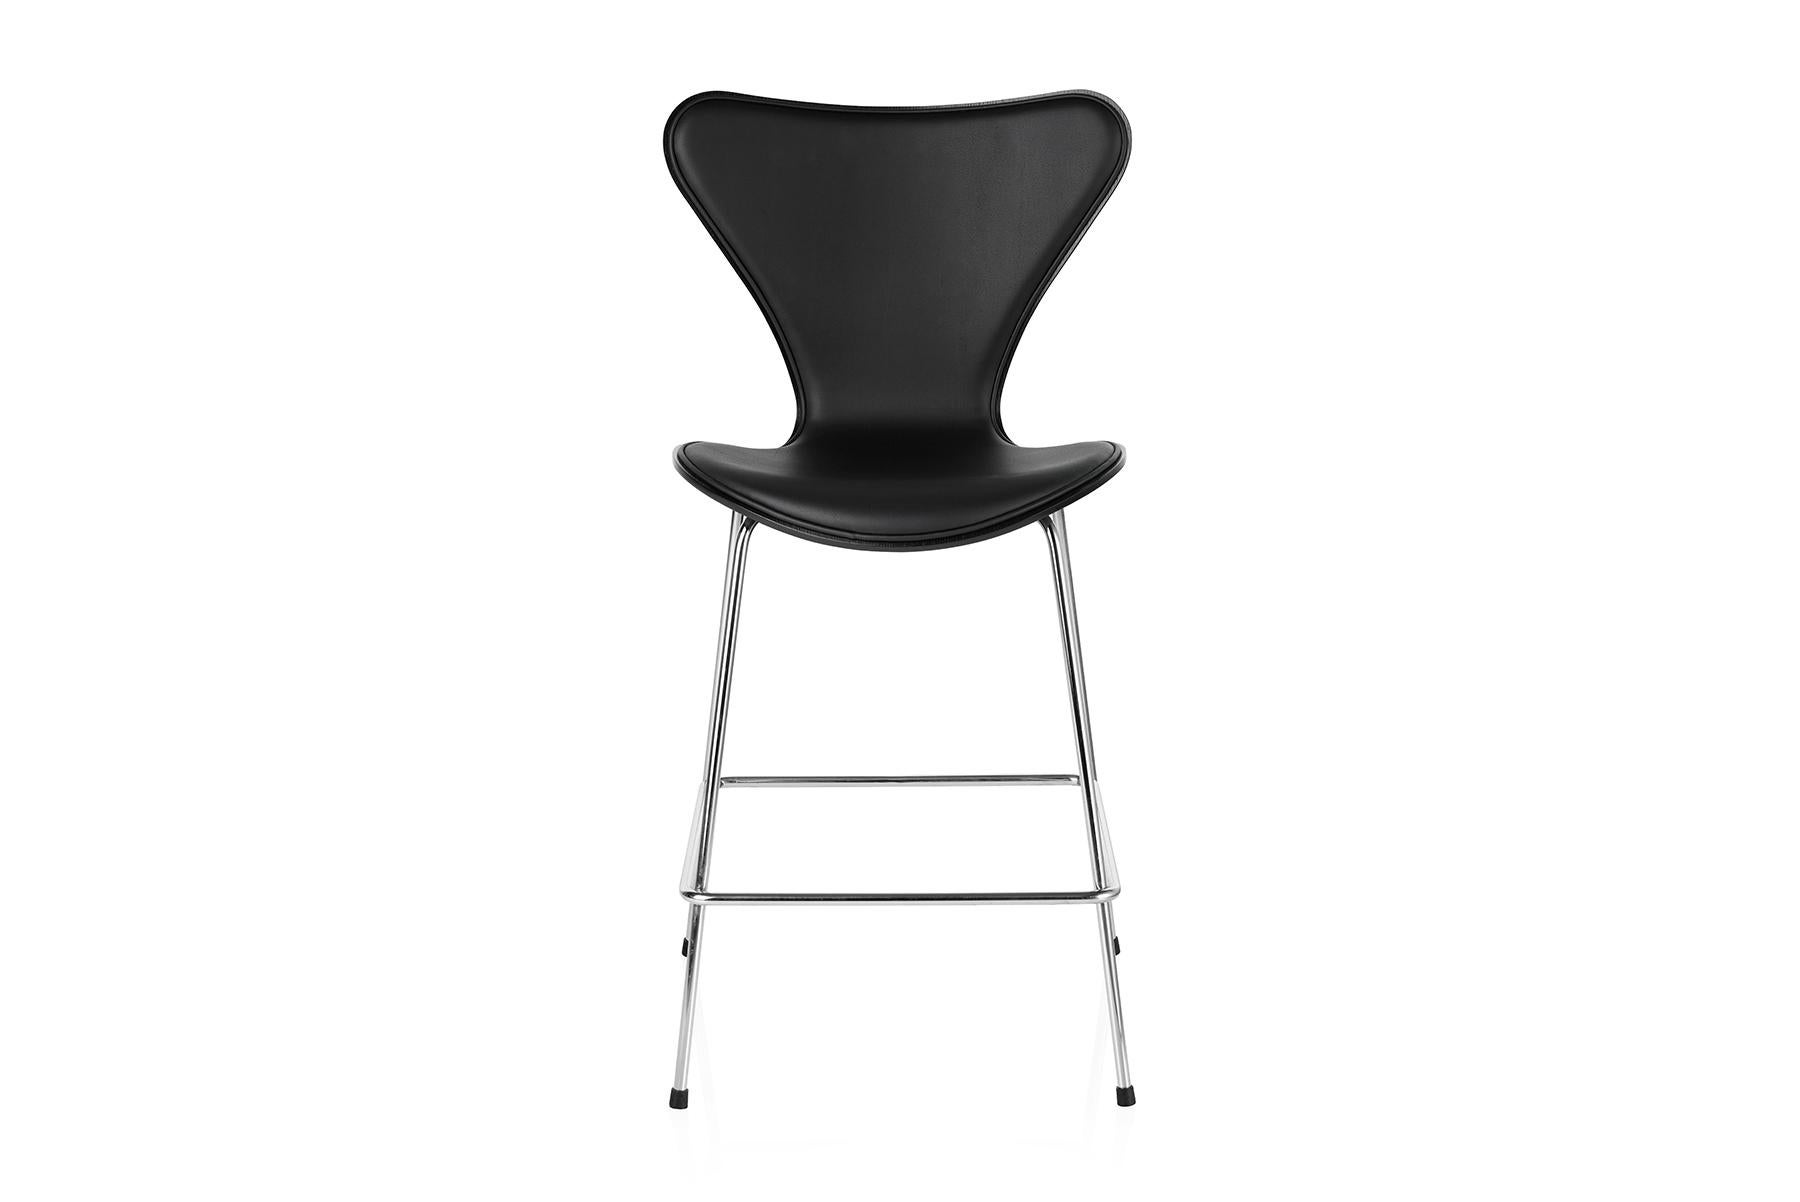 Le tabouret de bar Series 7™ est une extension belle, fonctionnelle et urbaine de la chaise classique Series 7 conçue par Arne Jacobsen en 1955. Cette chaise est de loin la plus vendue de l'histoire de Fritz Hansen et peut-être aussi de l'histoire